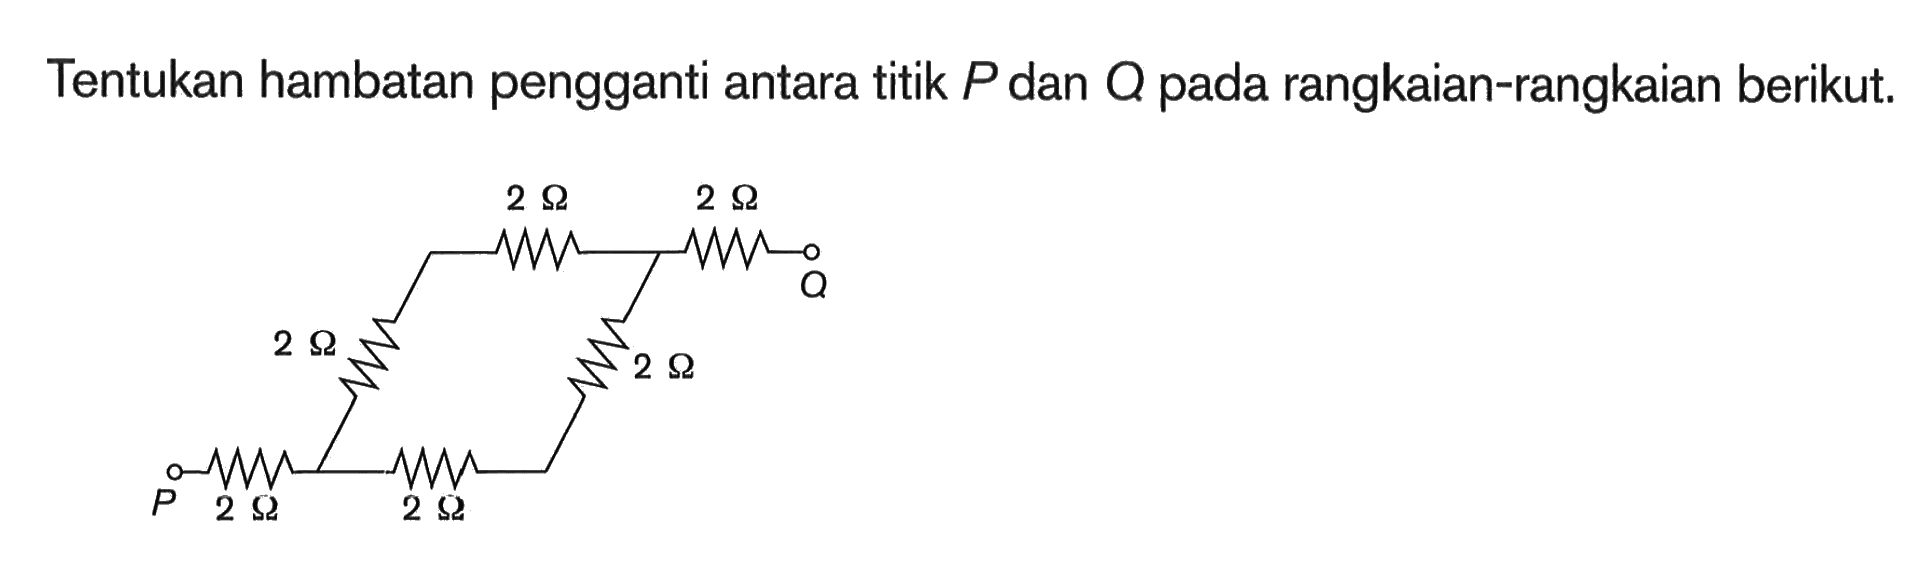 Tentukan hambatan pengganti antara titik P dan Q pada rangkaian-rangkaian berikut. 2 Ohm